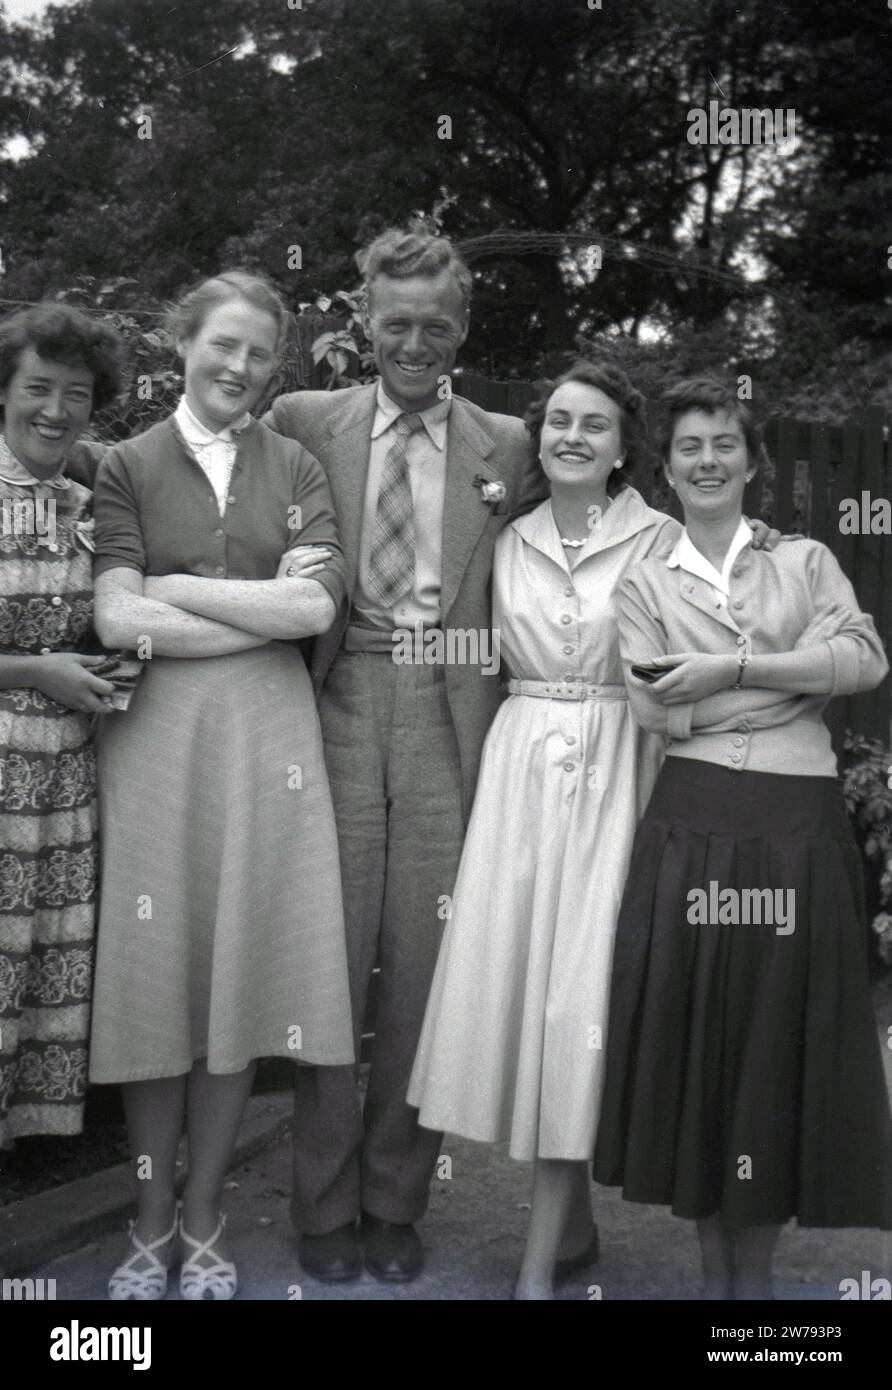 Années 1950, histoire, famille heureuse, une mère et un père se tiennent pour une photo avec leurs filles, Angleterre, Royaume-Uni. Les trois jeunes femmes portent les jupes élégantes et les hauts féminins stylistes de l'époque, Banque D'Images